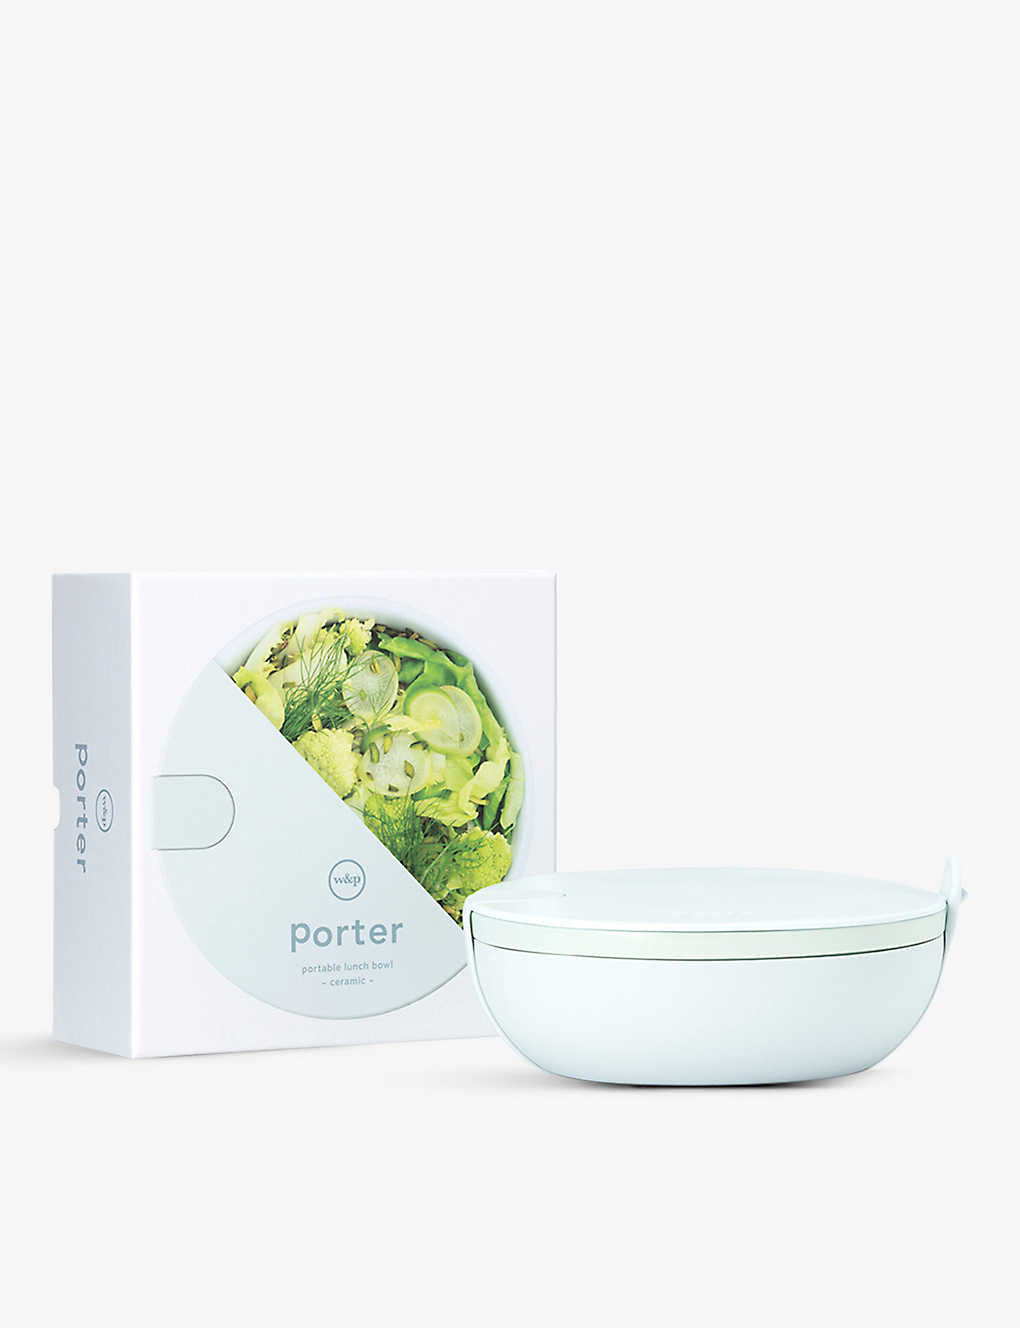 W&p Design The Porter Silicone-wrapped Ceramic Bowl 1l